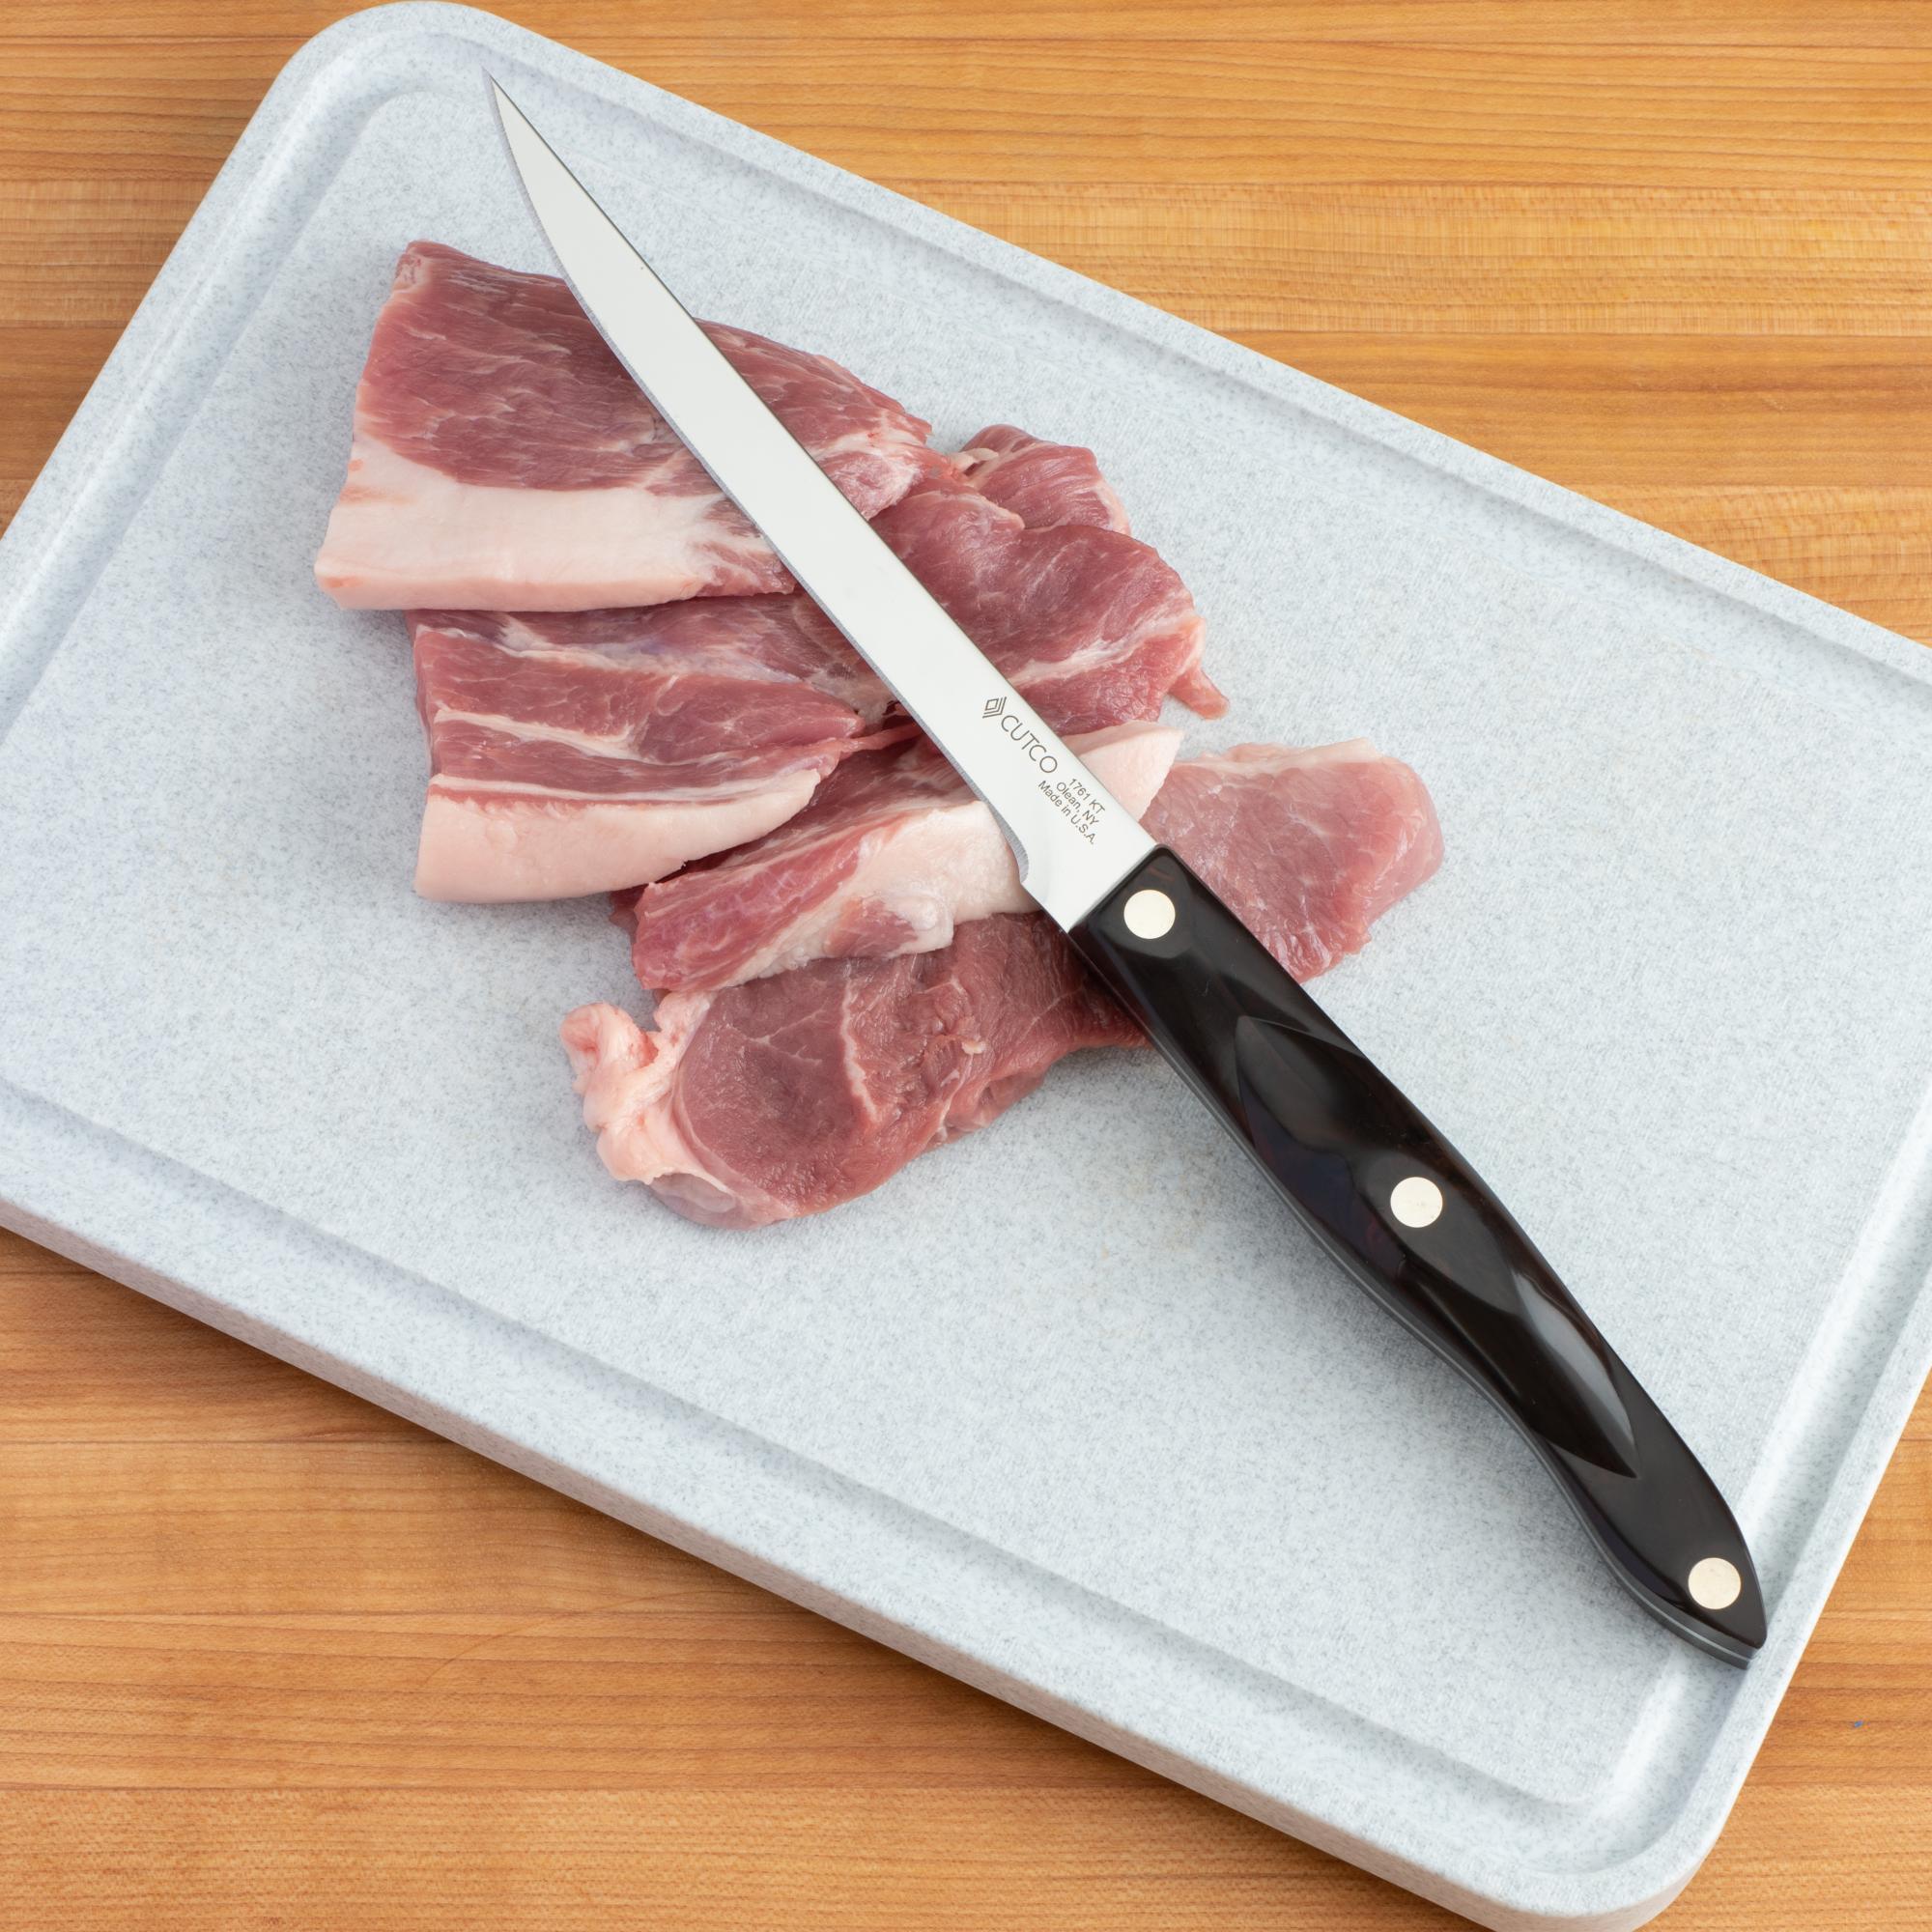 Sliced pork with a Boning Knife.